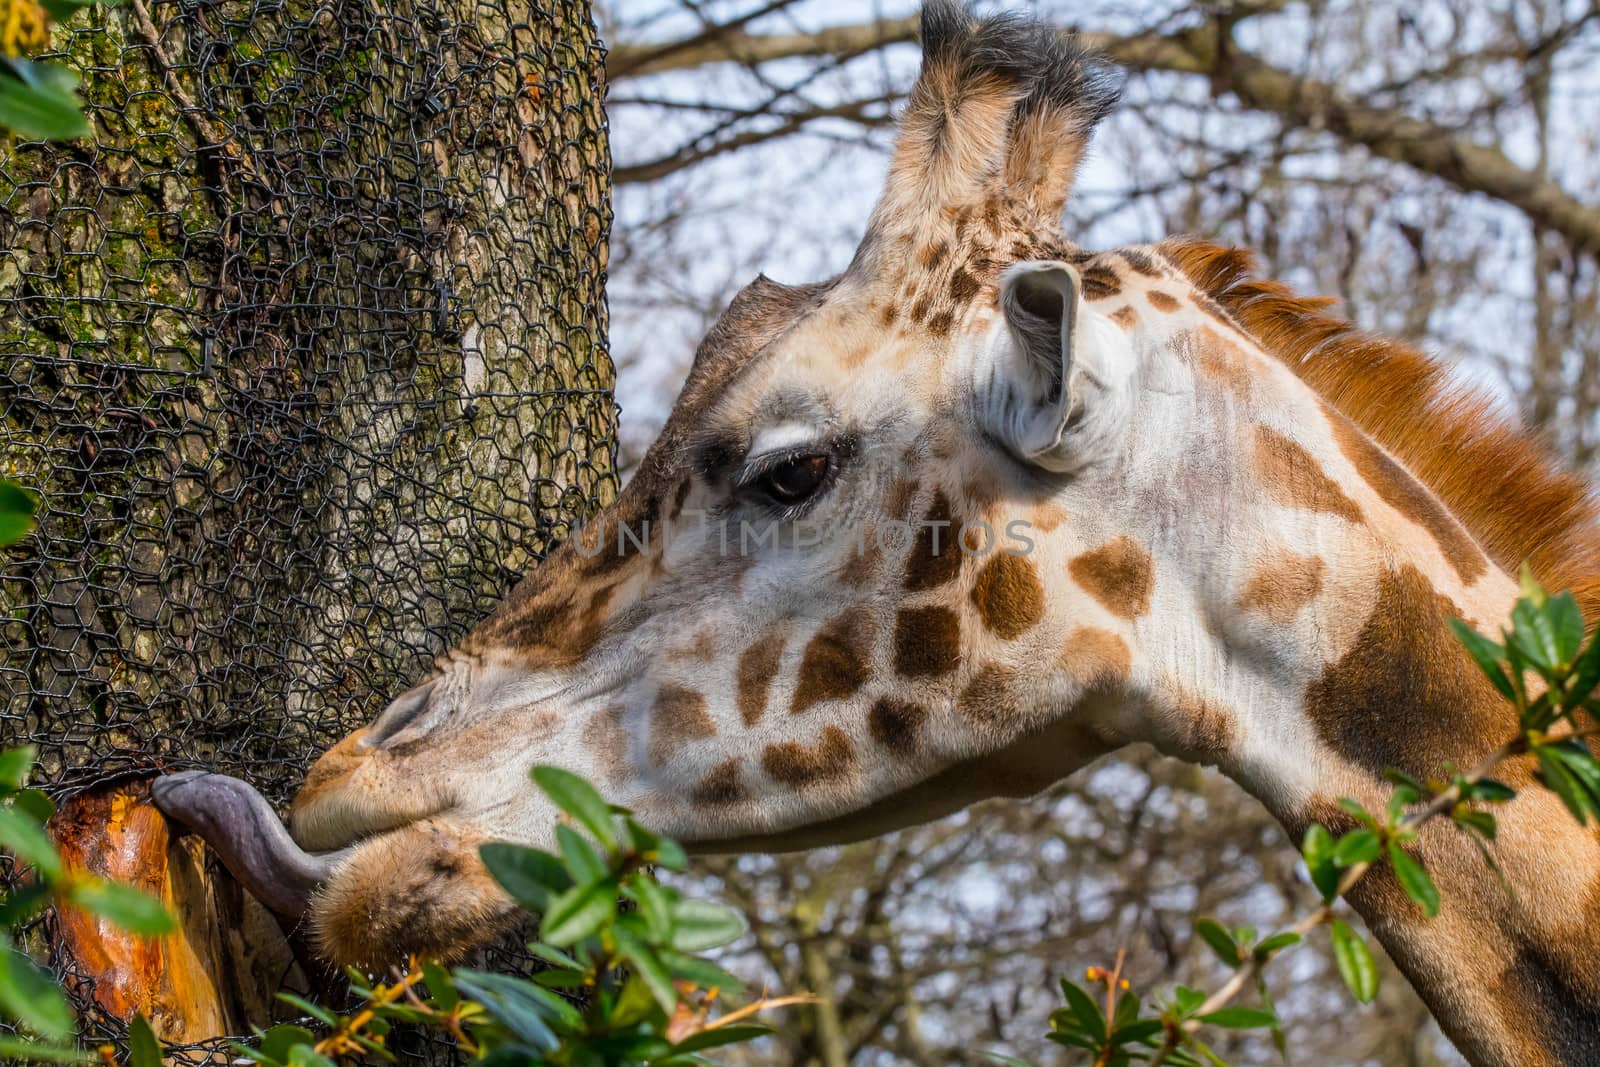 Giraff in artificial habitat at Zoo in Seattle, WA